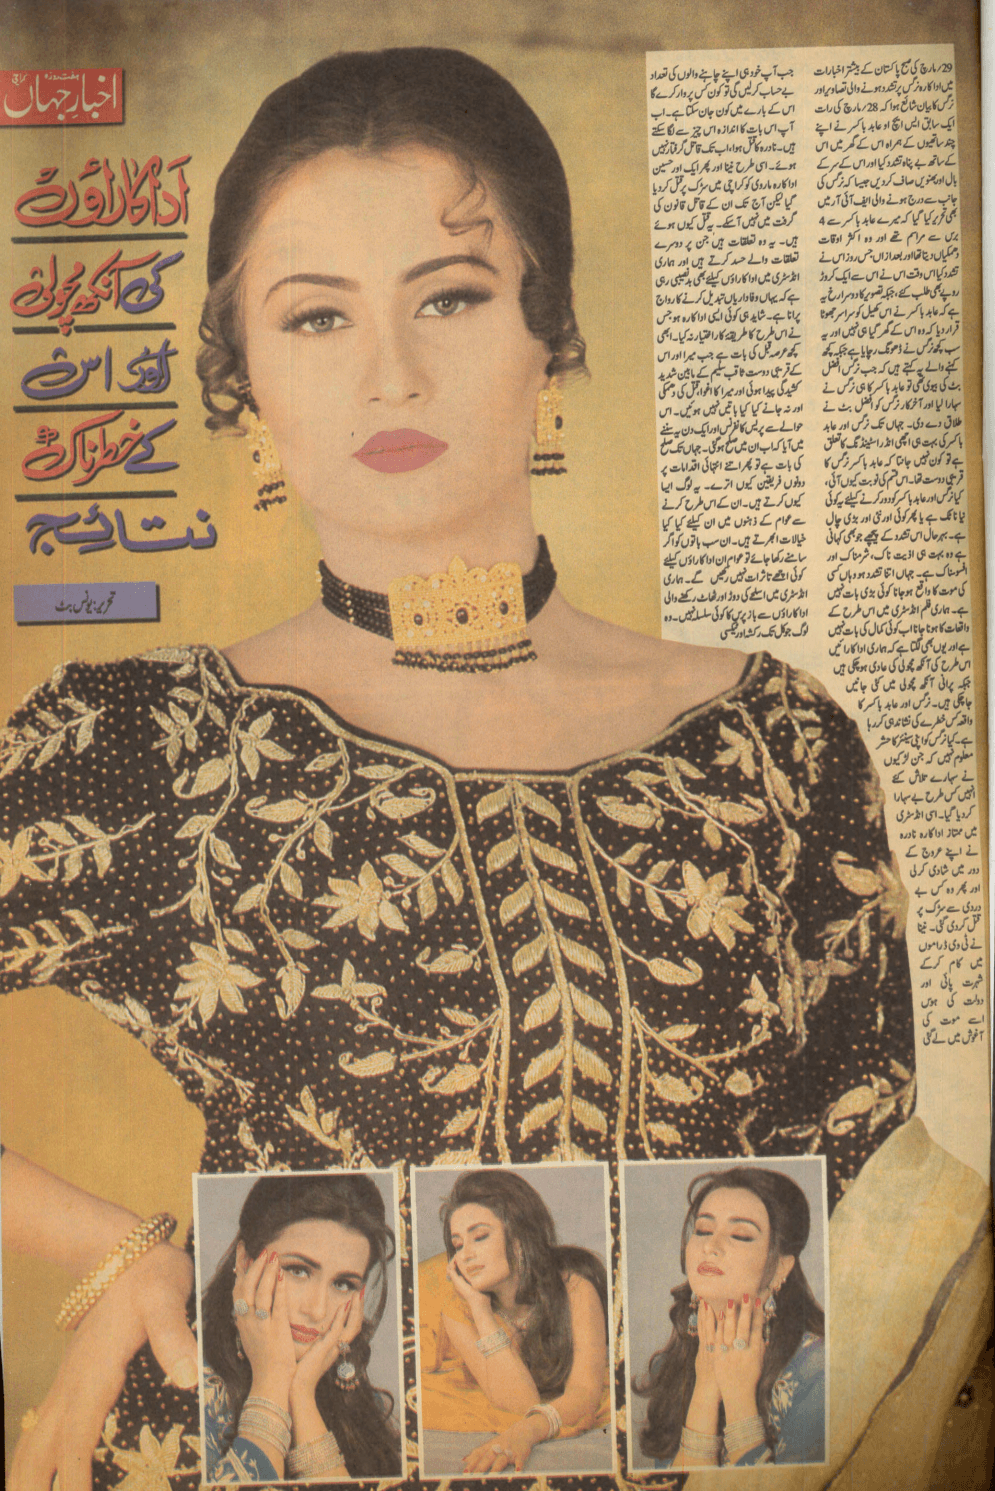 Akhbar-e-Jahan (April 4, 2002) - KHAJISTAN™